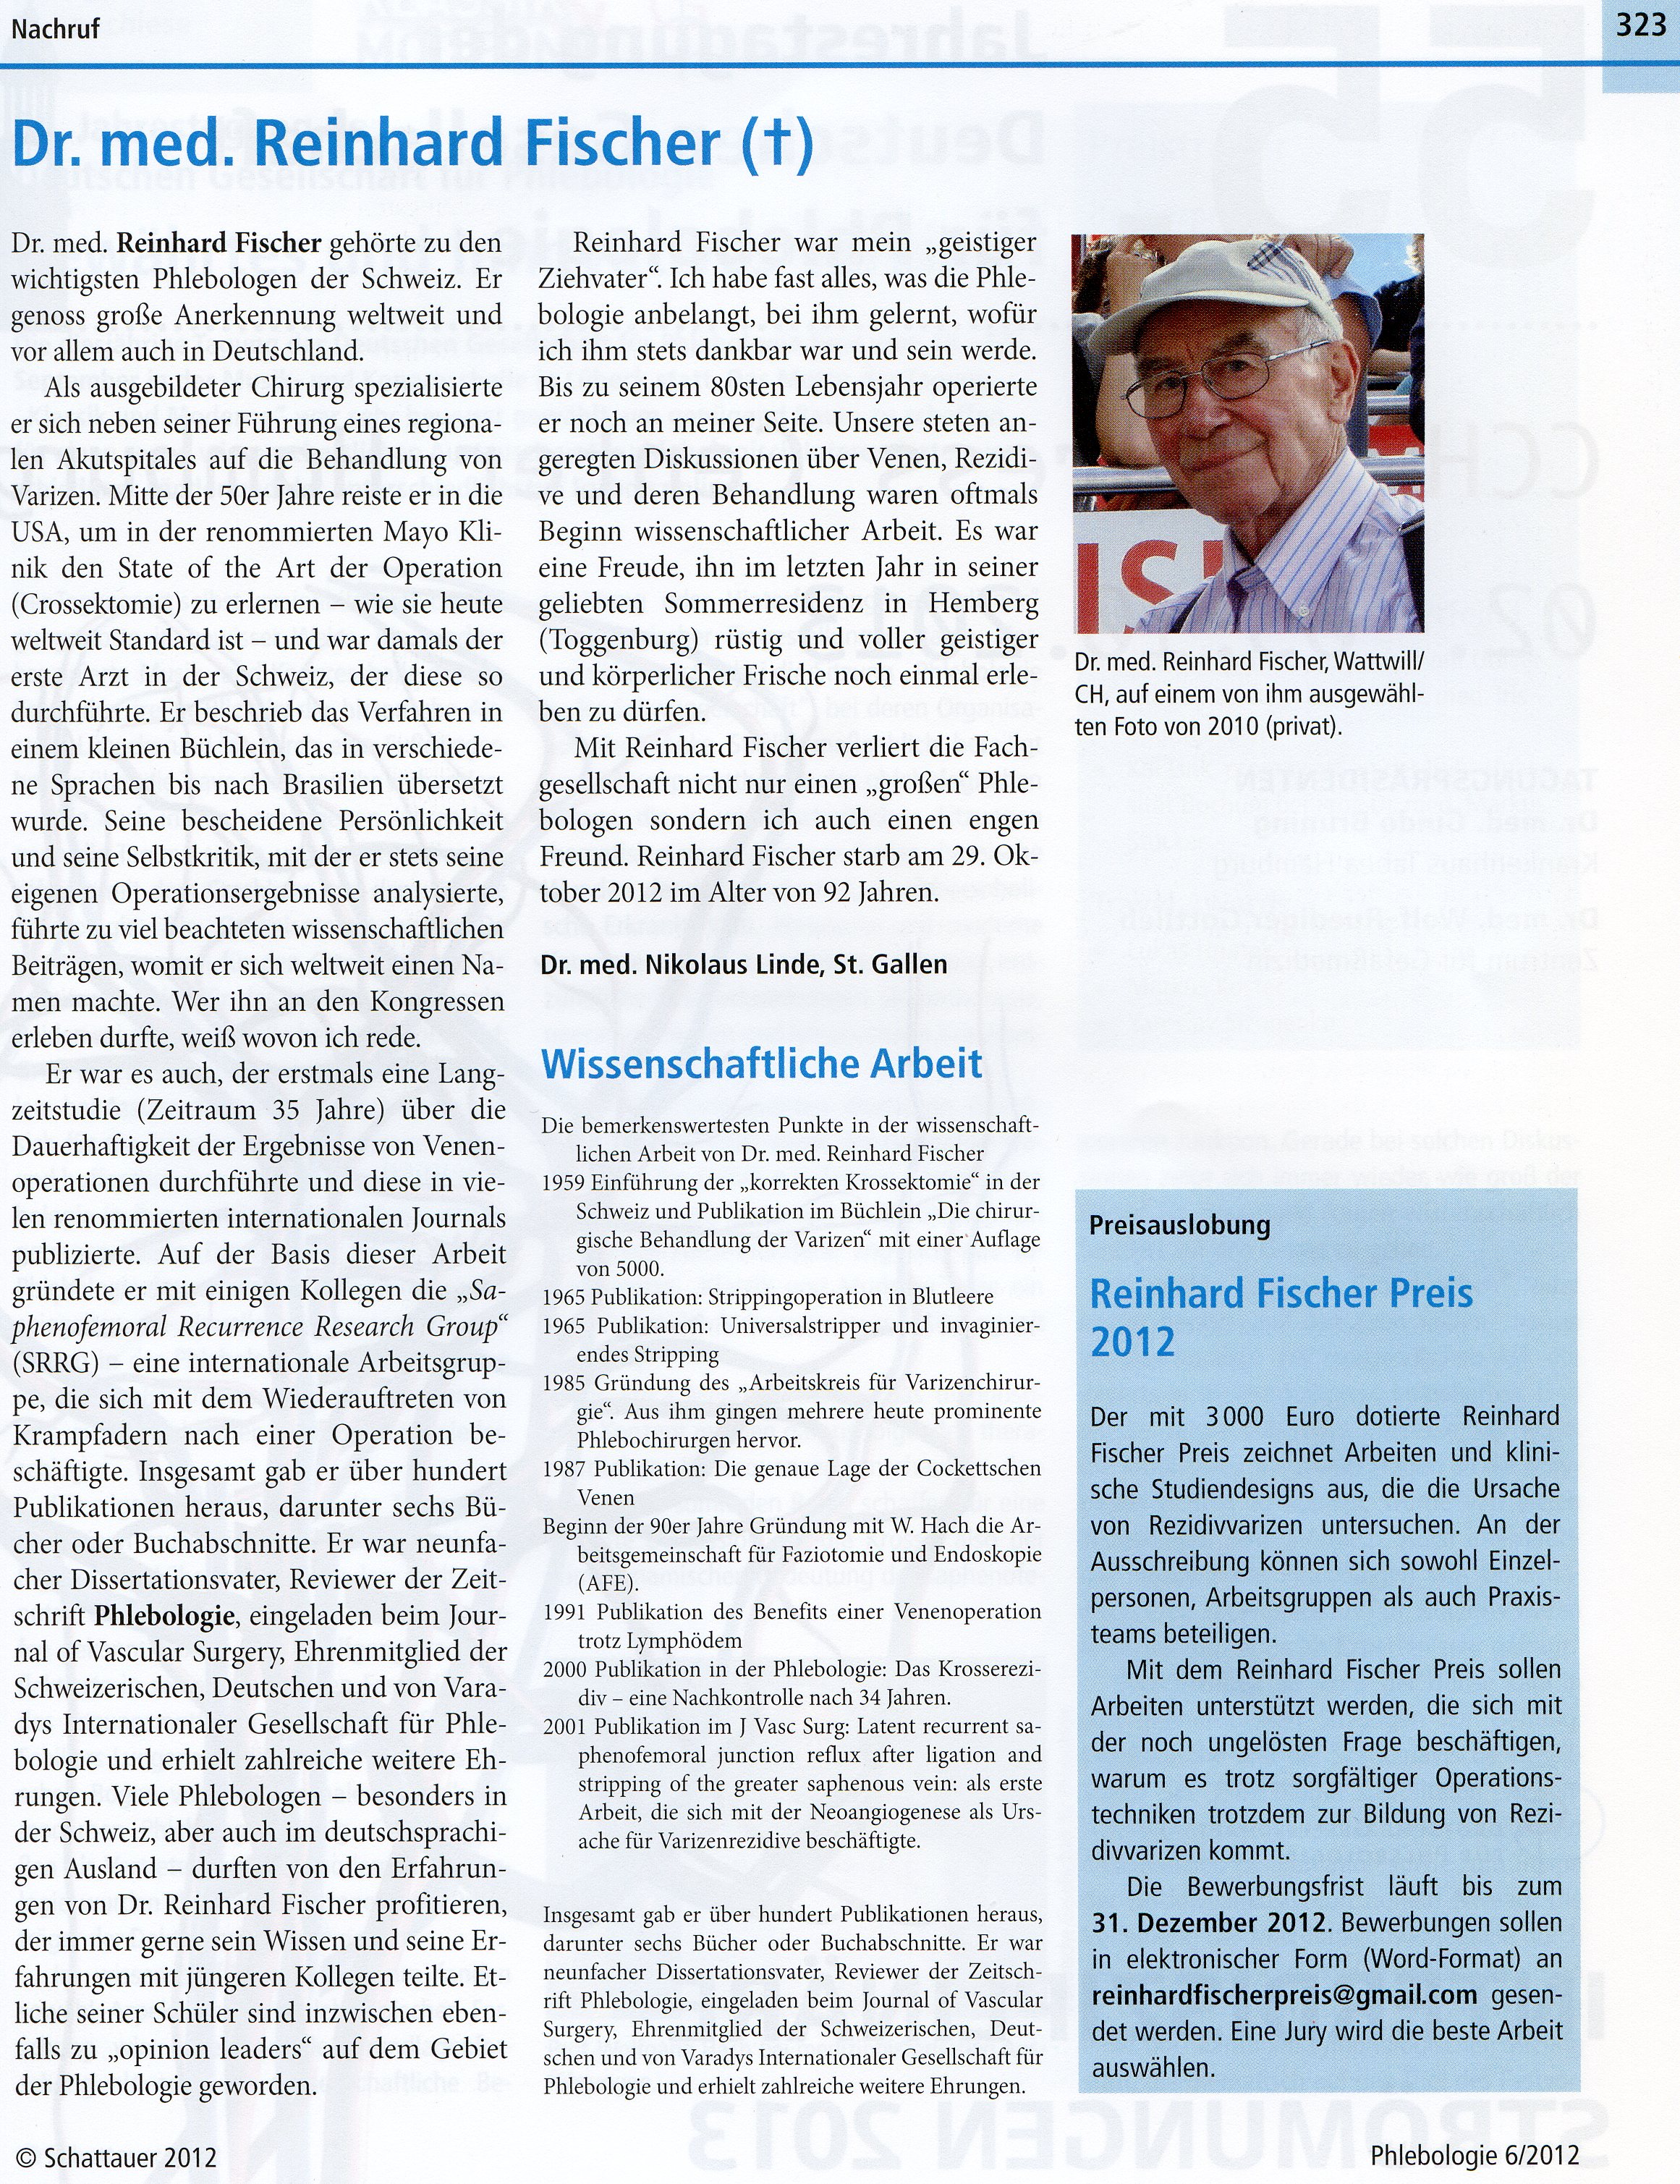 Dr. Linde schreibt einen Nachruf über einen der bekanntesten Schweizer Phlebologen, Dr. Reinhard Fischer